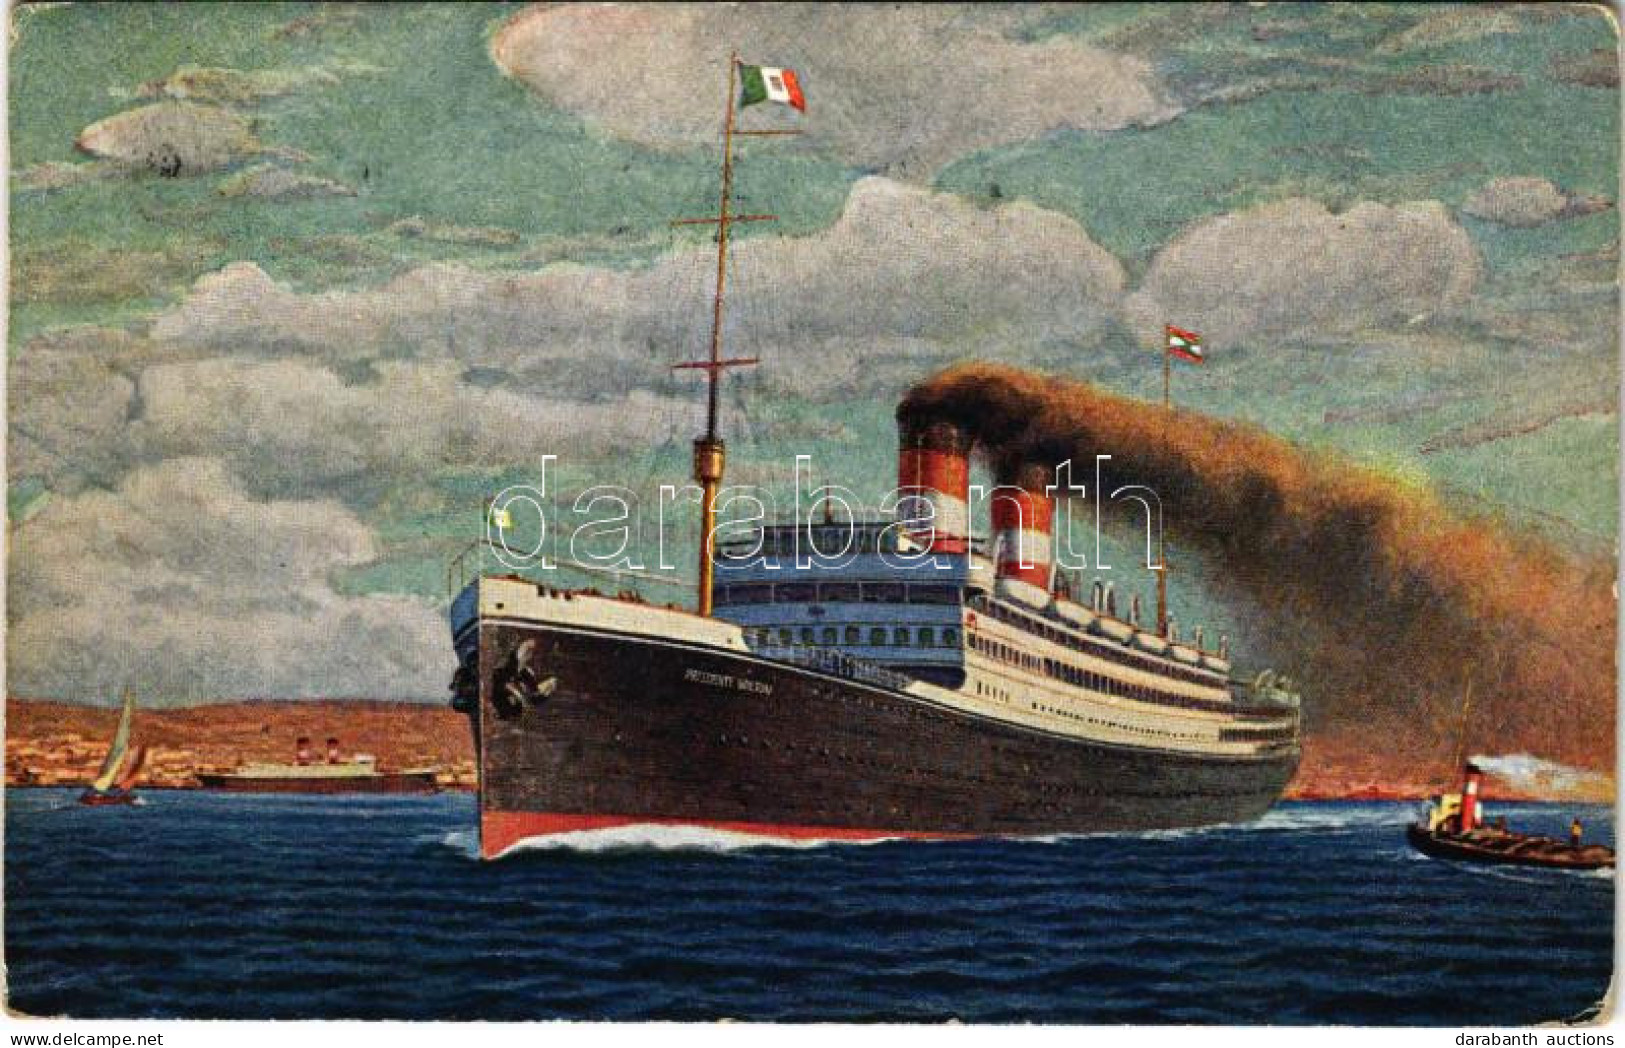 T2/T3 1925 Cosulich Line Trieste TSS "Presidente Wilson" Express Passenger Steamship, Ocean Liner (EK) - Unclassified